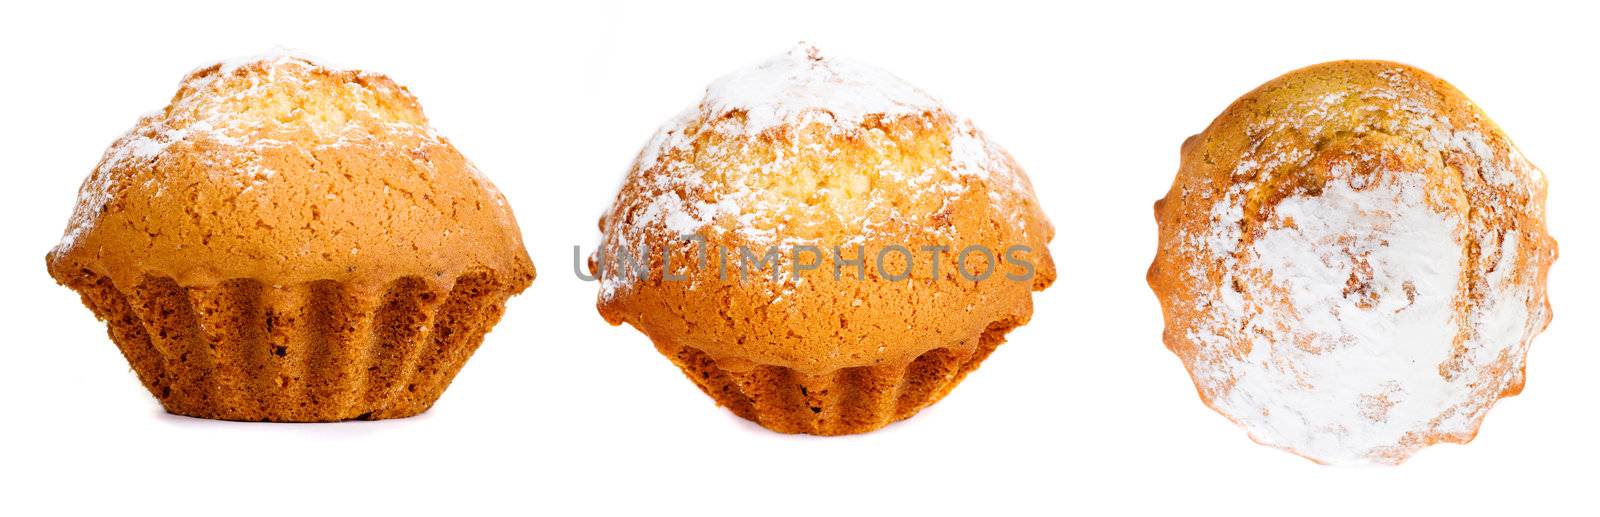 Tasty muffin with sugar powder by Gdolgikh